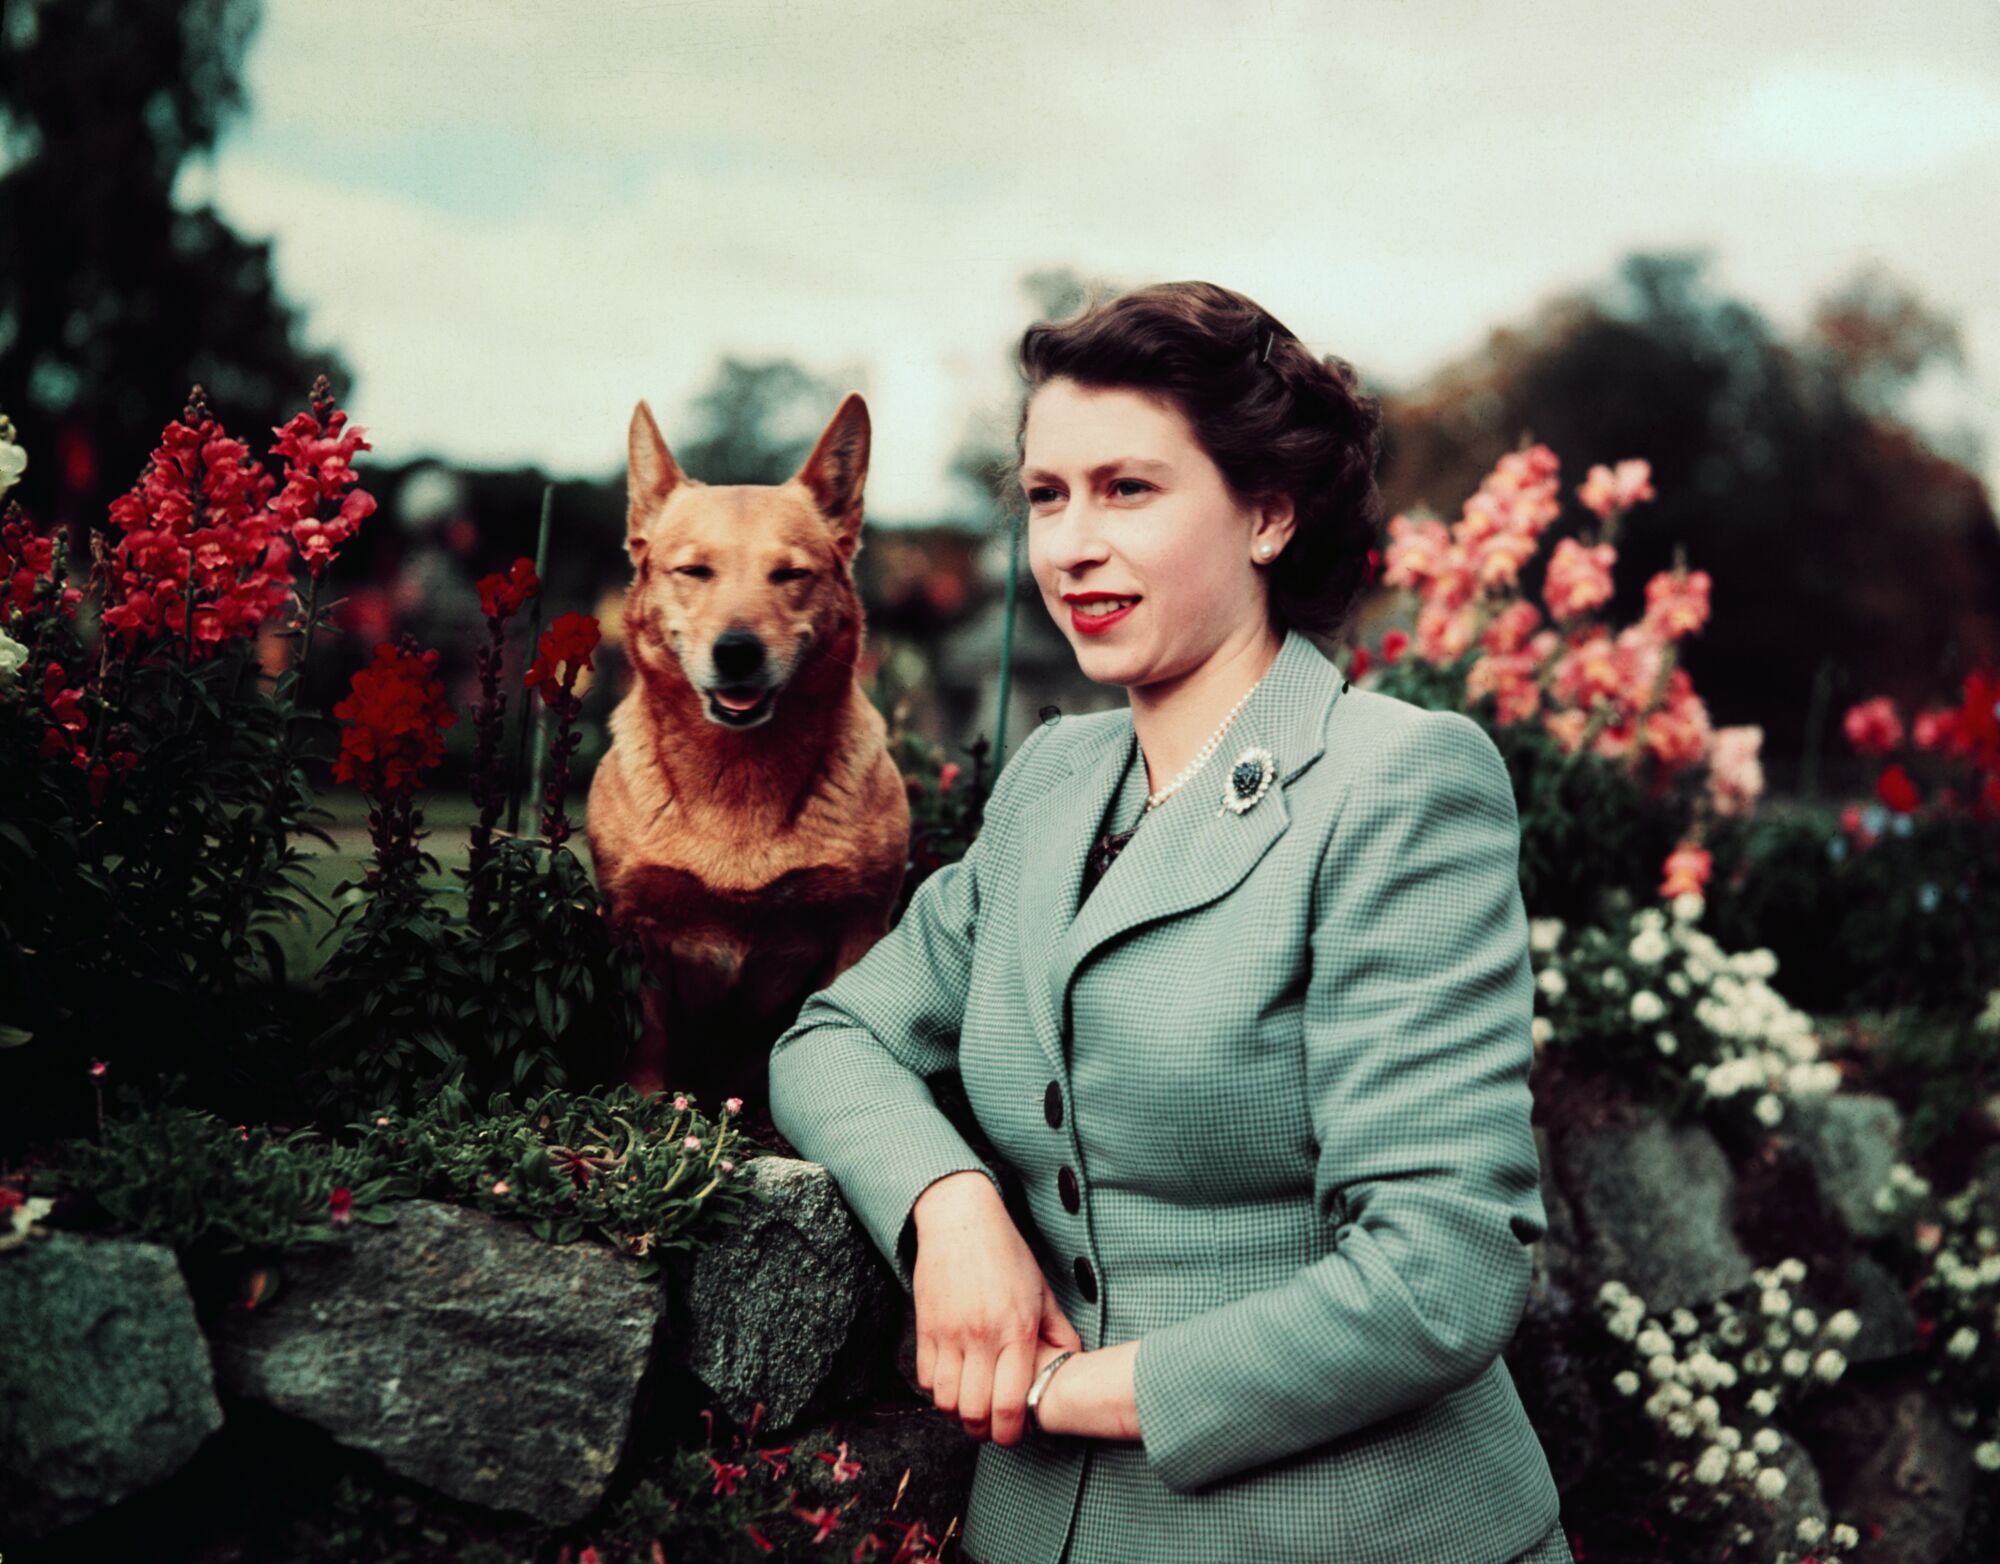 Königin Elizabeth II. posiert im September 1952 mit einem ihrer Lieblingscorgis neben Blumen.